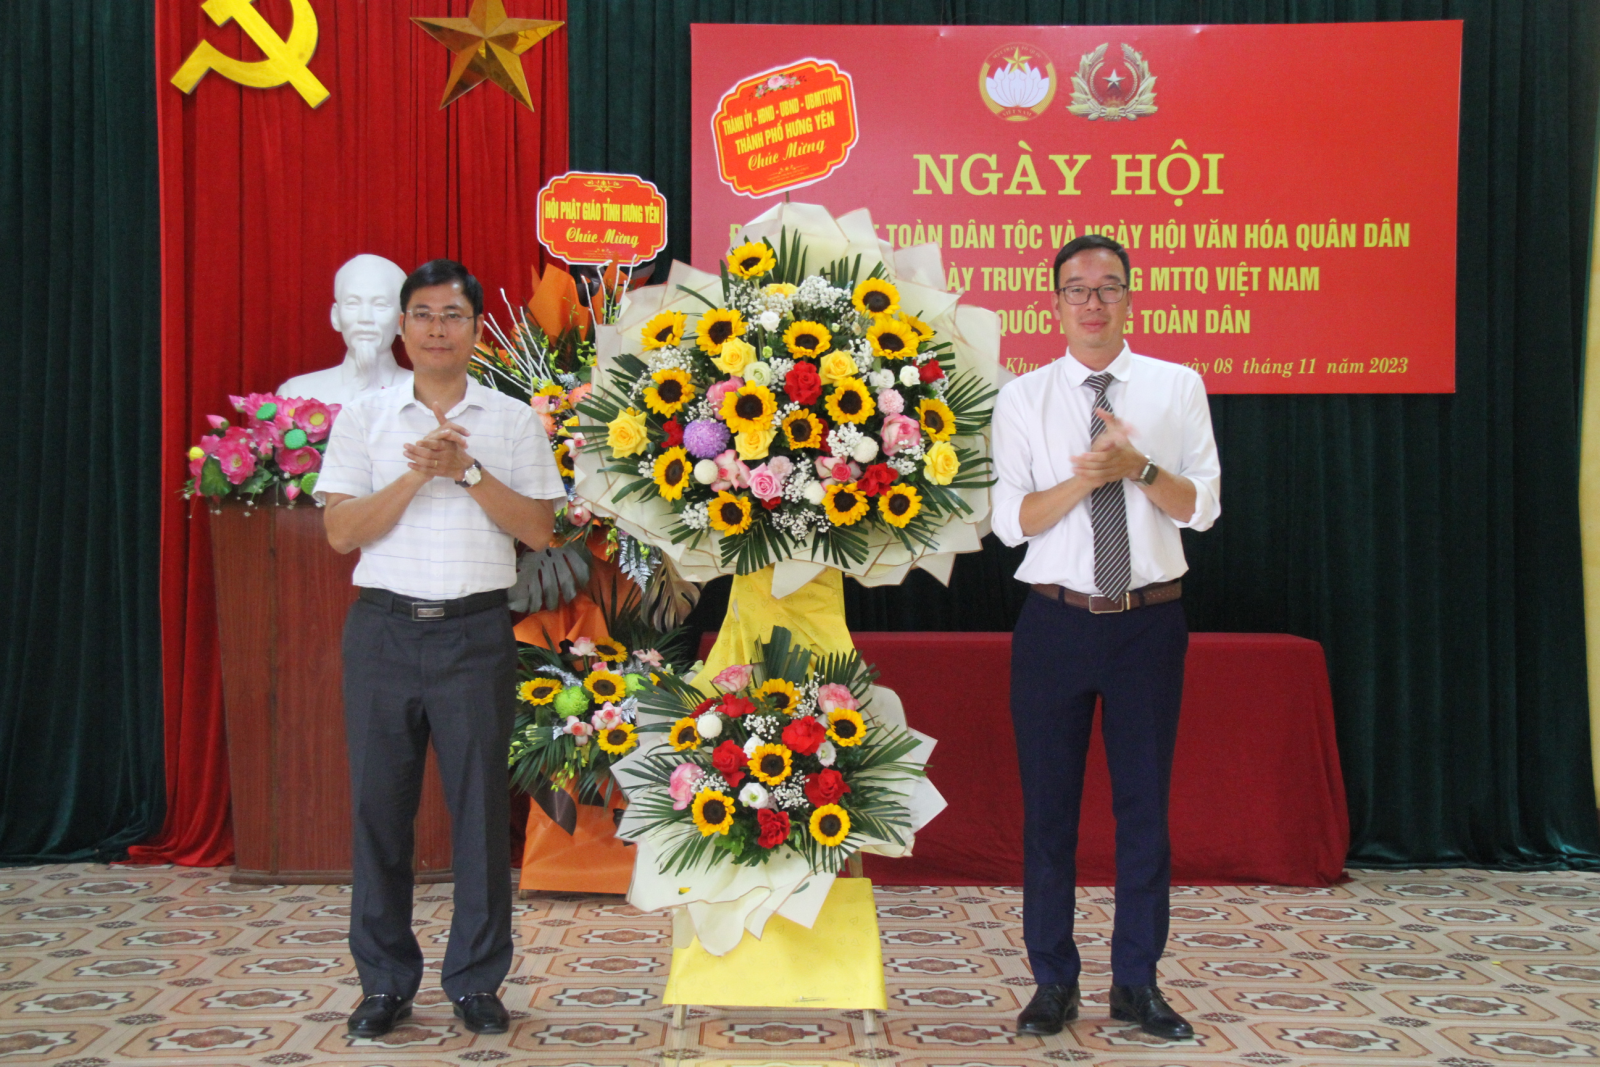 Khu dân cư An Vũ, phường Hiến Nam tổ chức ngày Hội Đại đoàn kết toàn dân tộc, ngày Hội văn hóa quân dân năm 2023